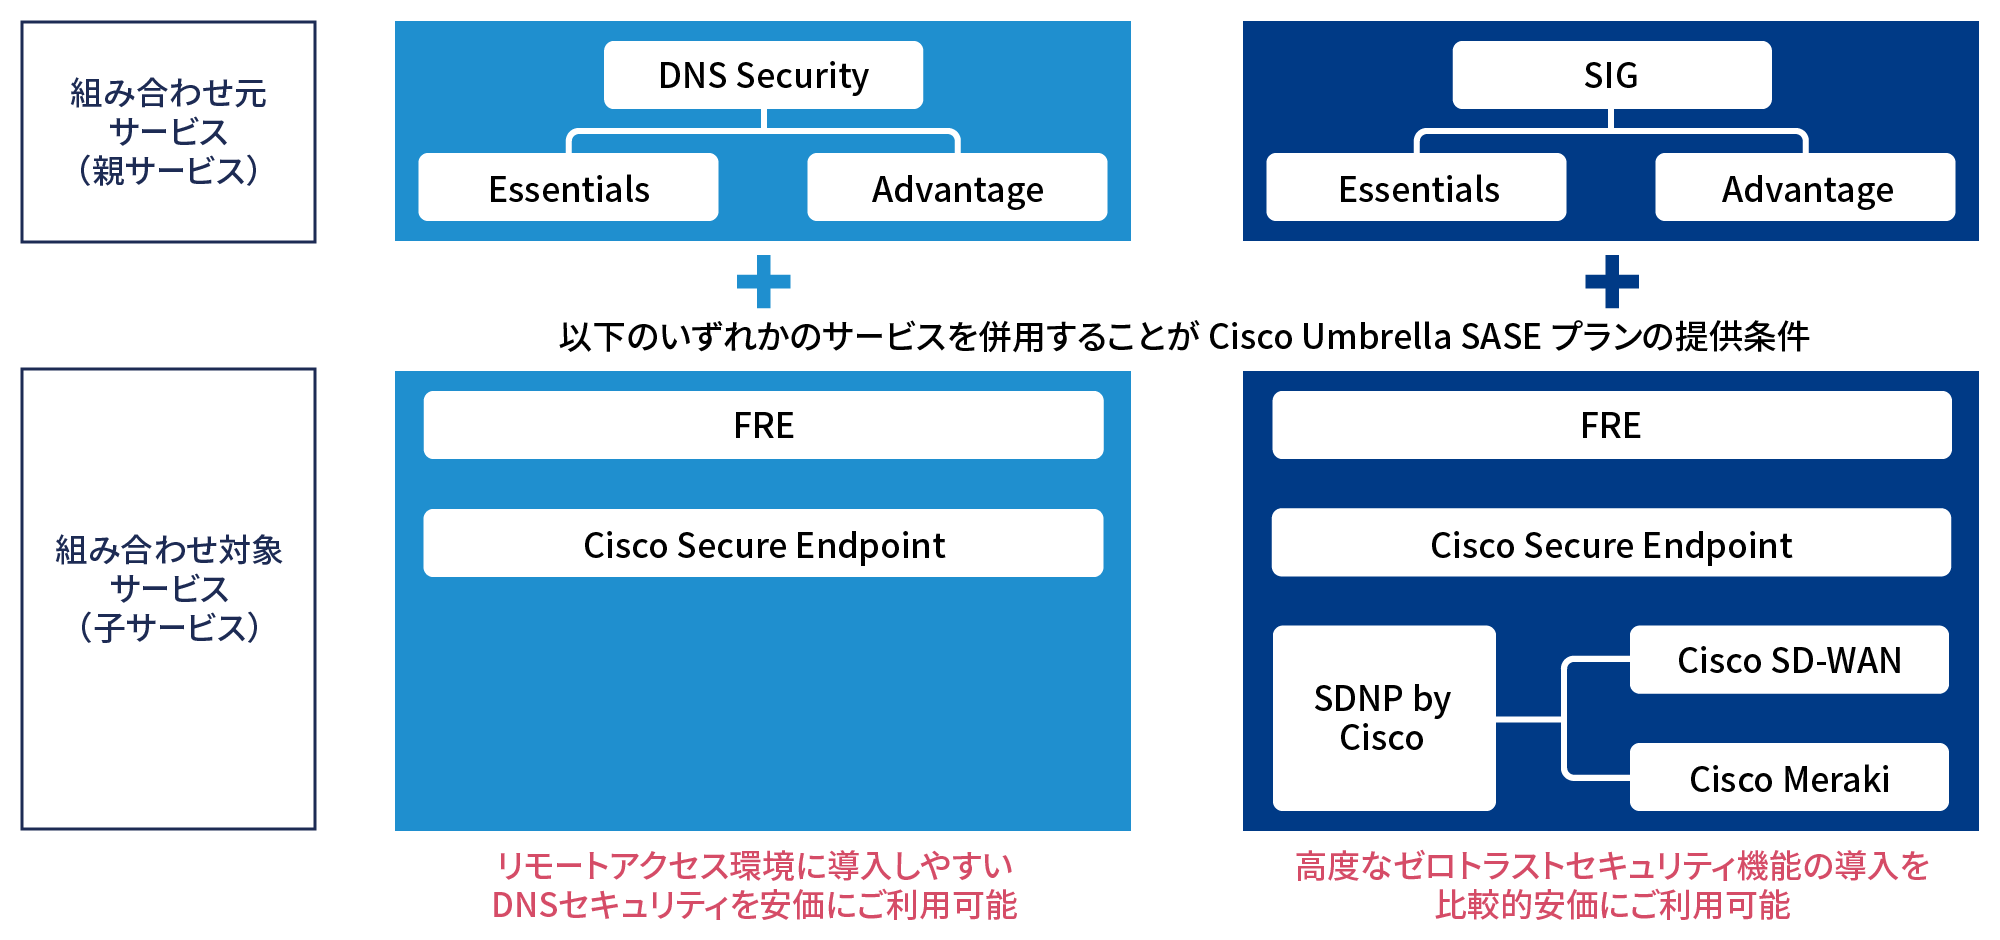 ほかサービスの併用により、DNS SASEプランはリモートアクセス環境に導入しやすいDNSセキュリティを安価にご利用可能、SIG SASEプランは高度なゼロトラストセキュリティの導入を比較的安価にご利用可能